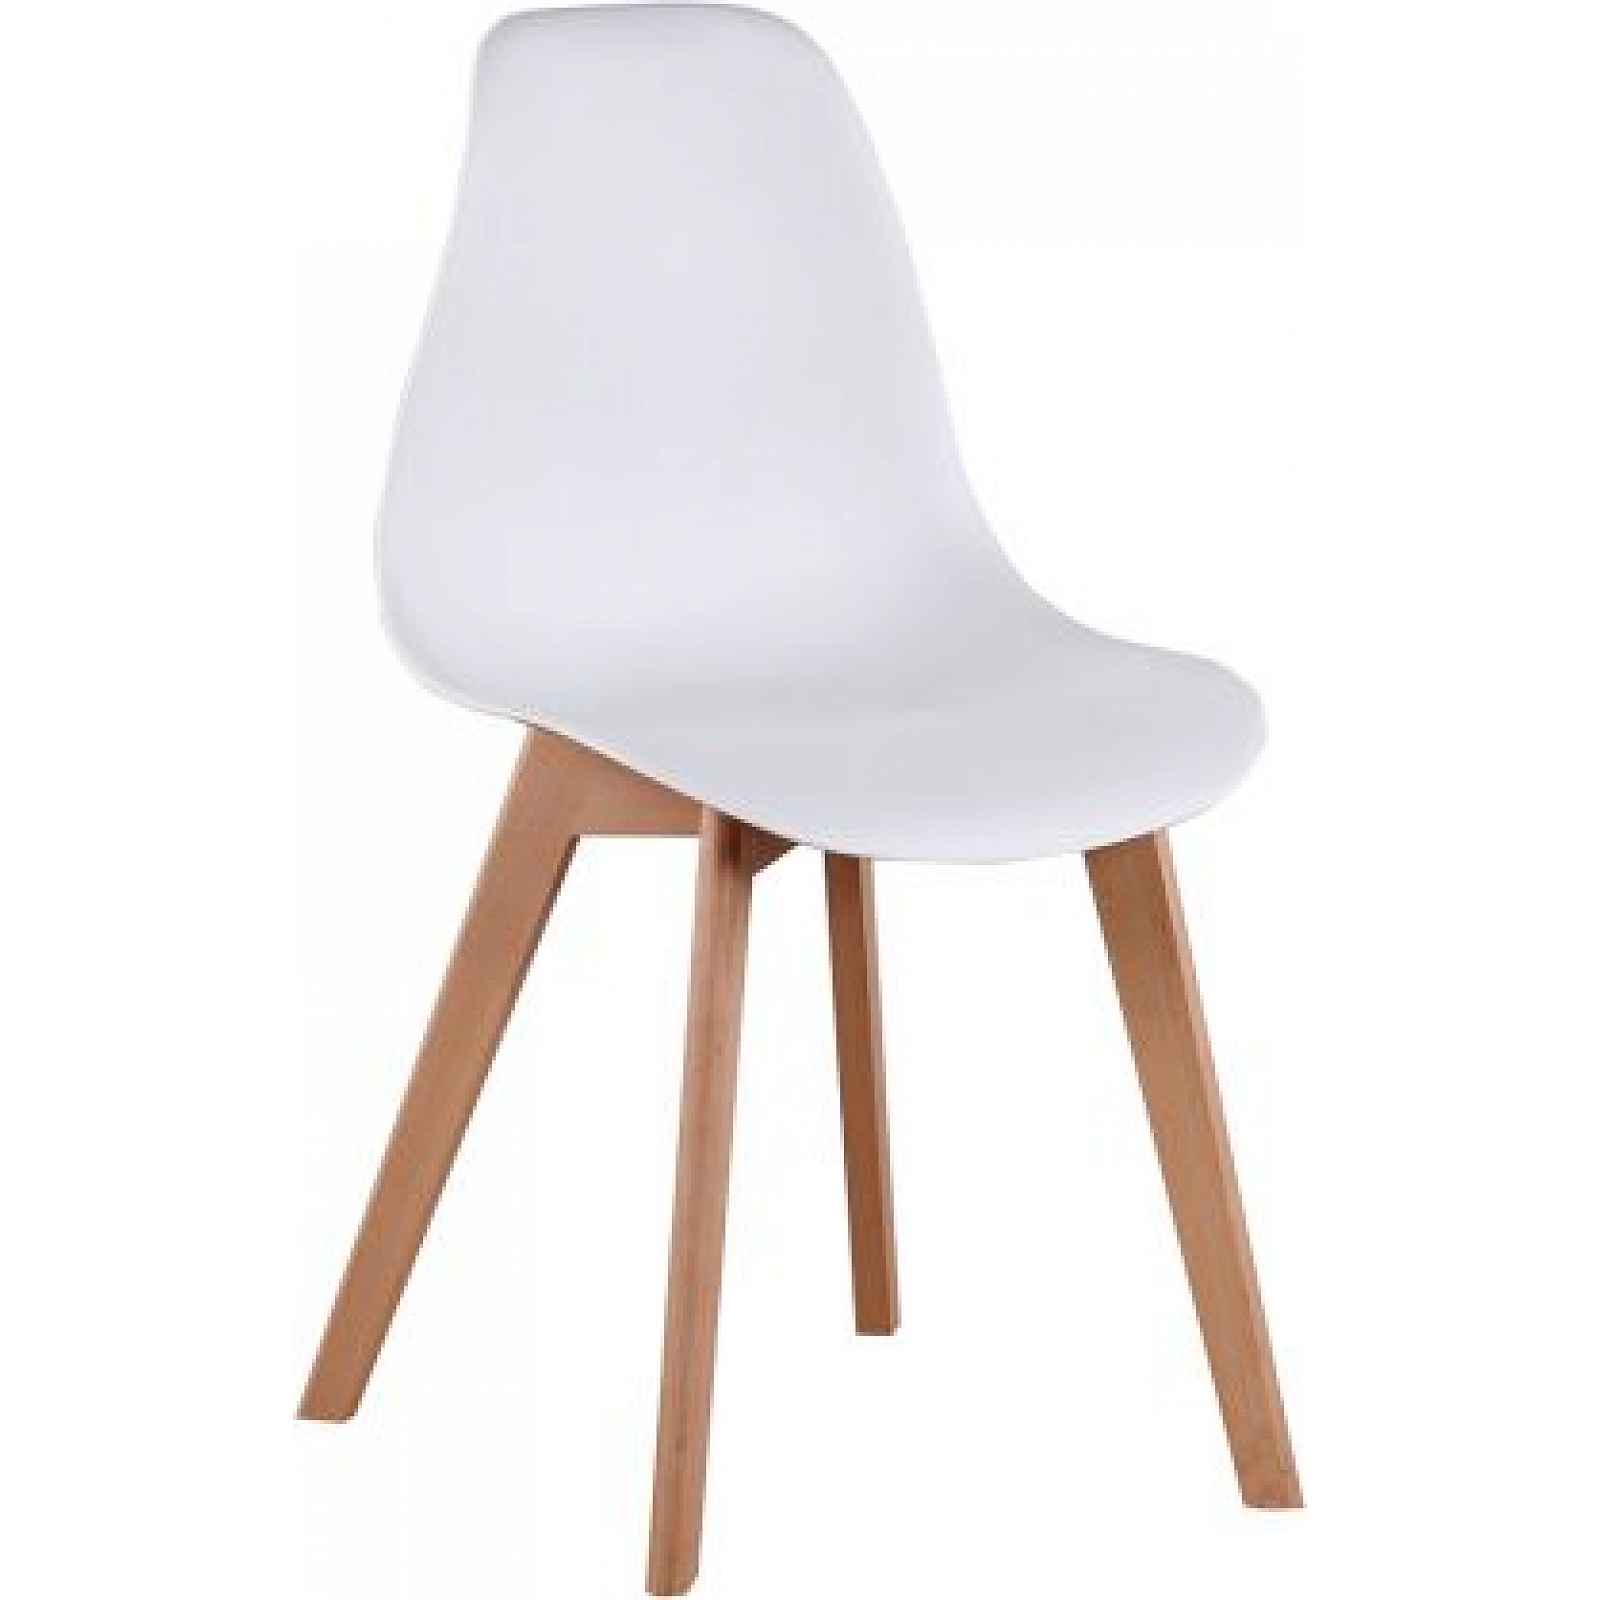 Jídelní židle, bílá/buk, AYNA - 46x51x85 cm